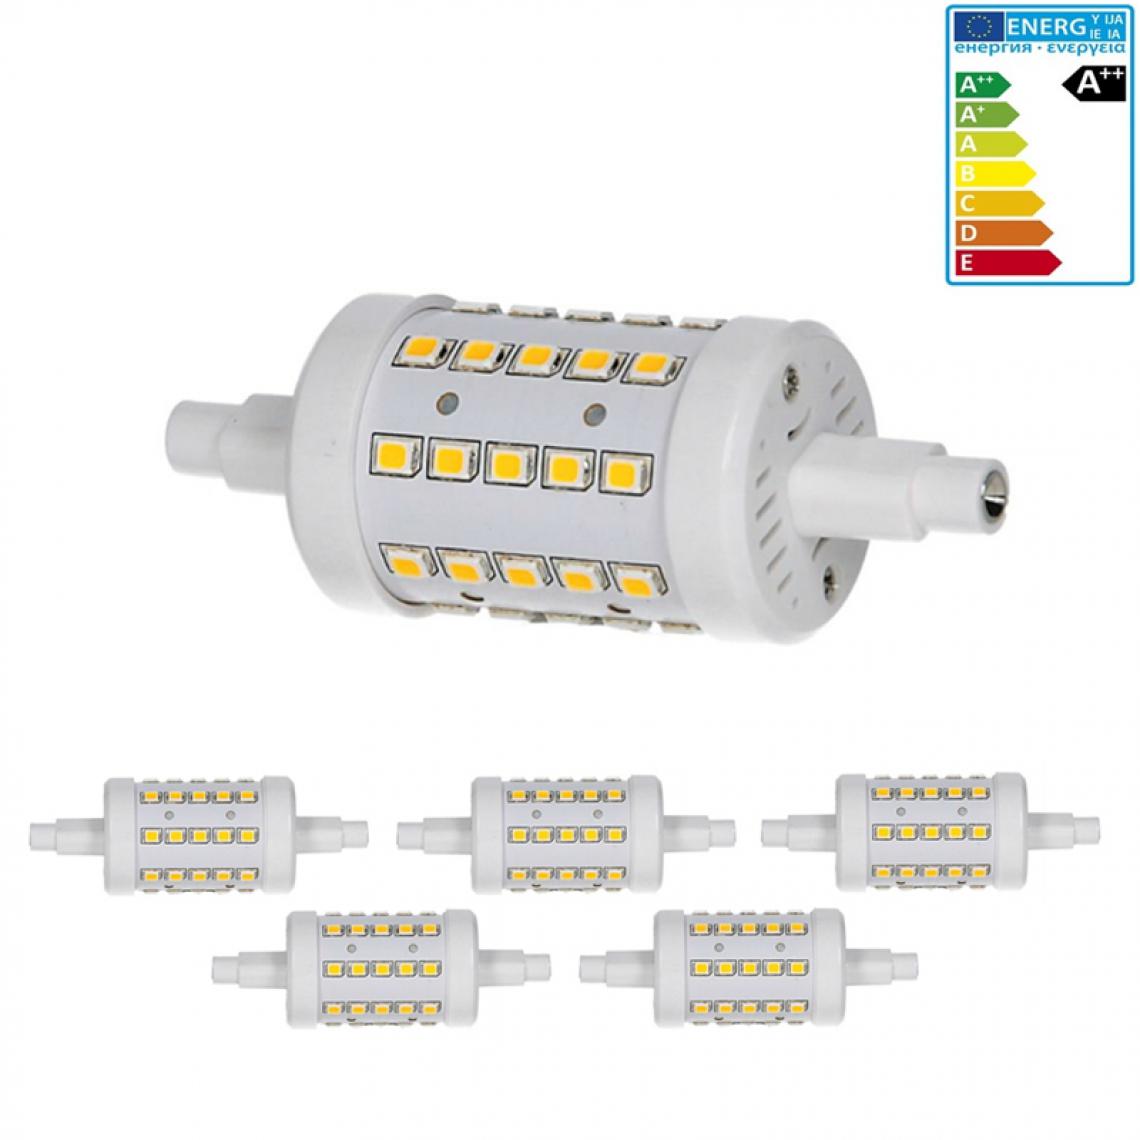 Ecd Germany - ECD Germany 5 x R7S Lampe LED 7W 78mm 700 lumens AC86-265V angle de faisceau 360 ° remplace ampoule halogène 45W réglable blanc neutre - Tubes et néons